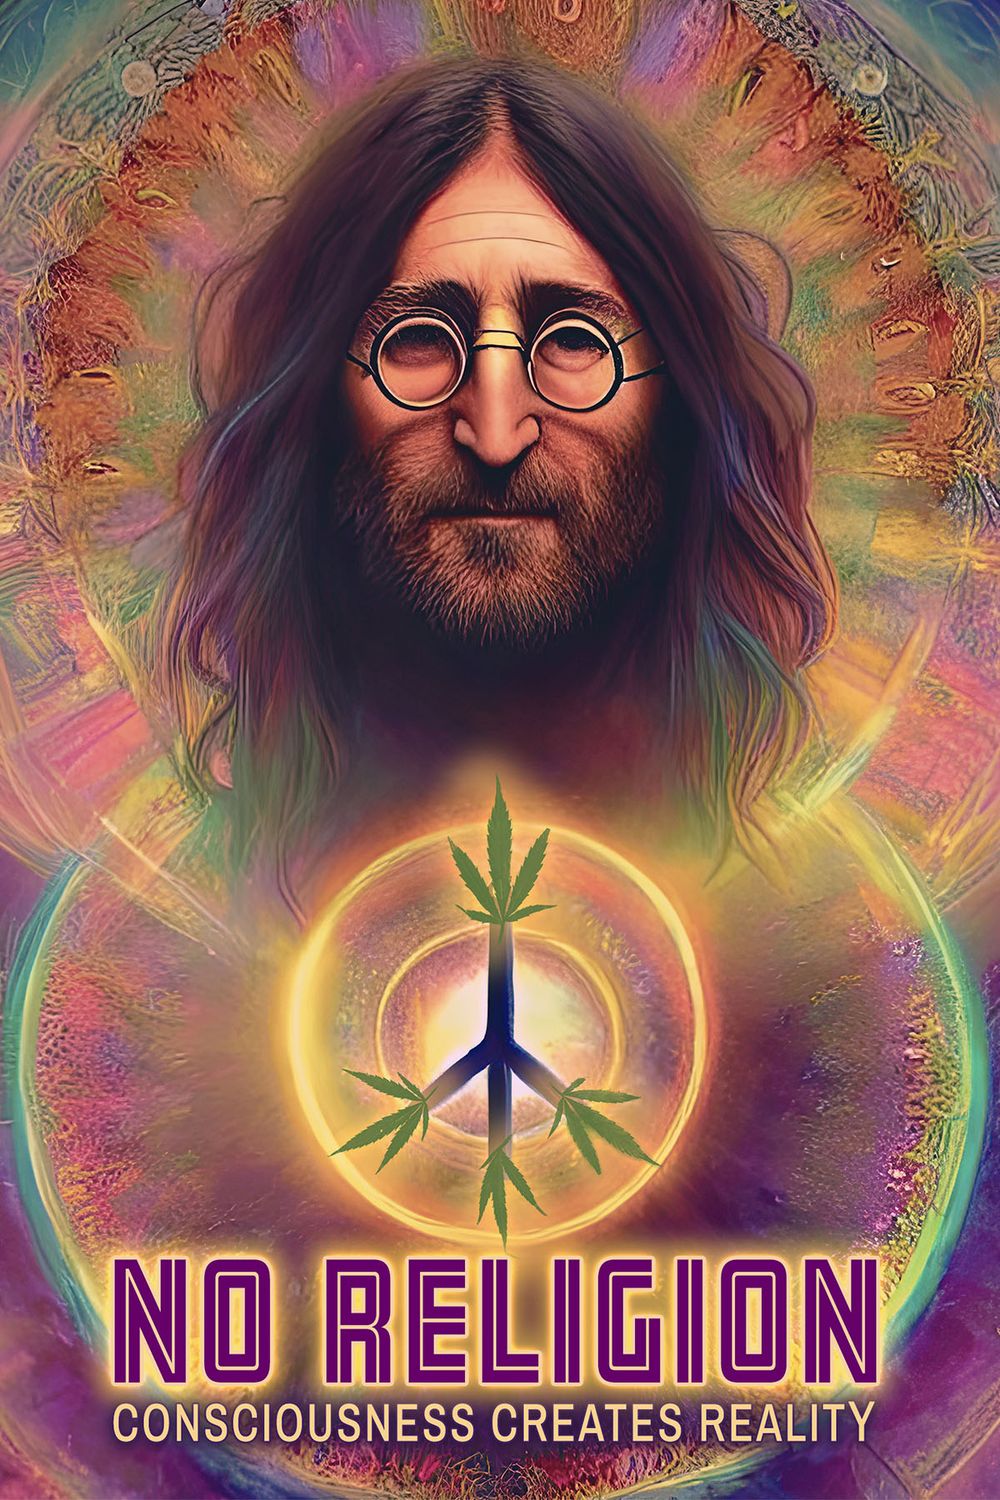 Imagine — John Lennon